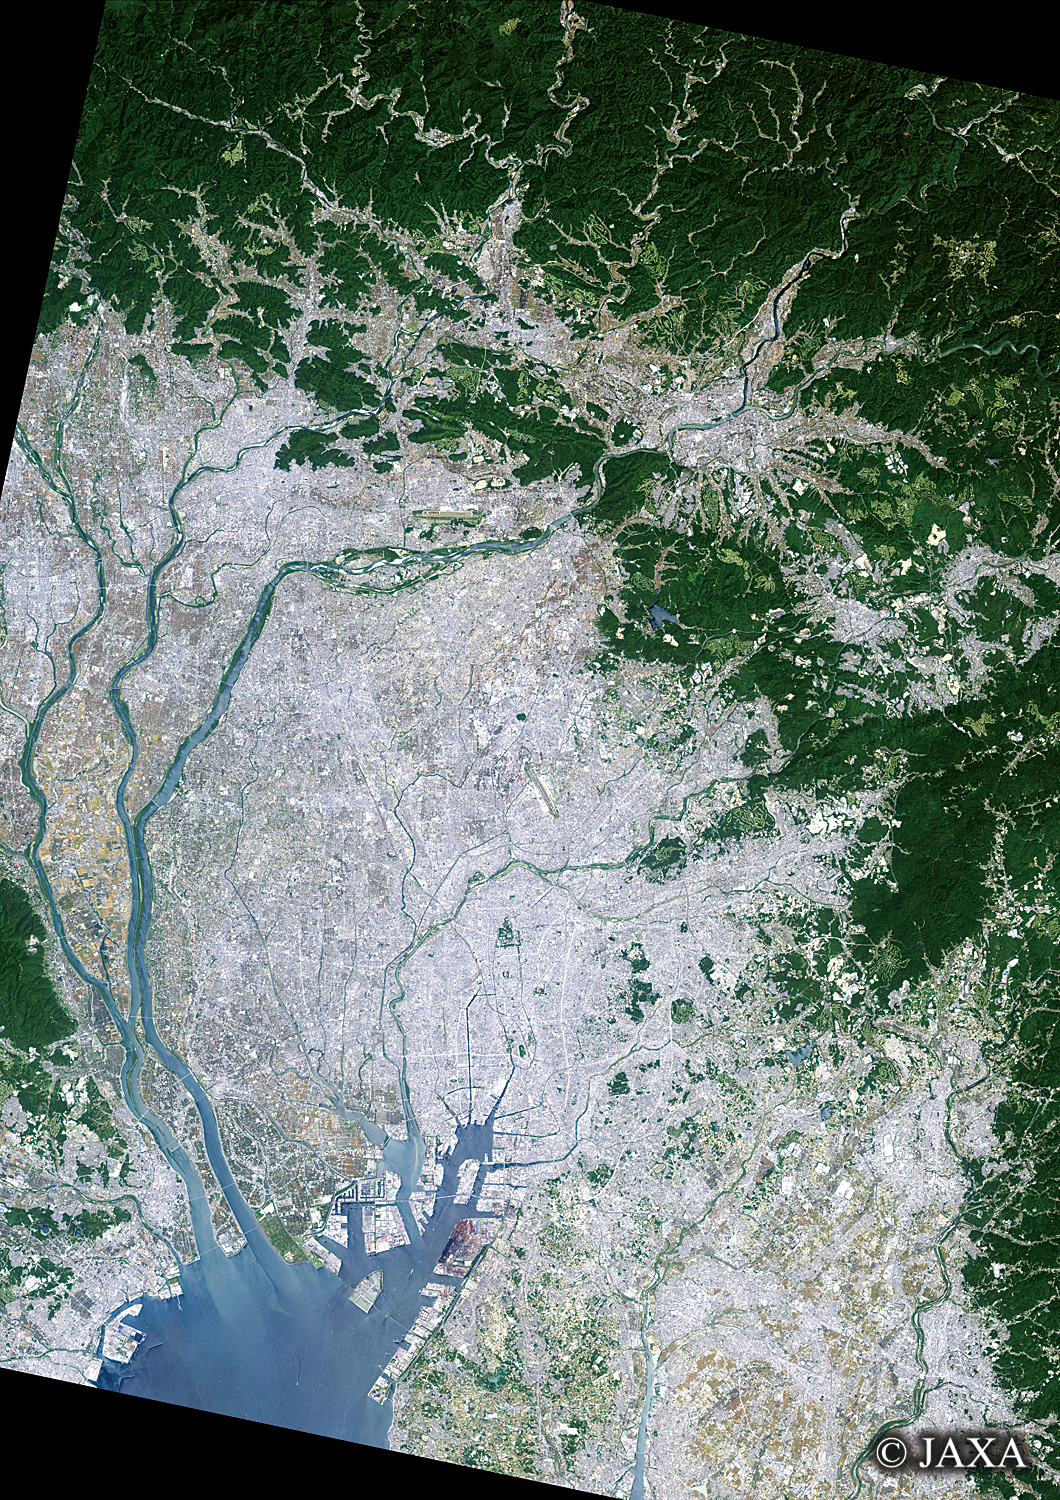 だいちから見た日本の都市 岐阜県・愛知県:衛星画像